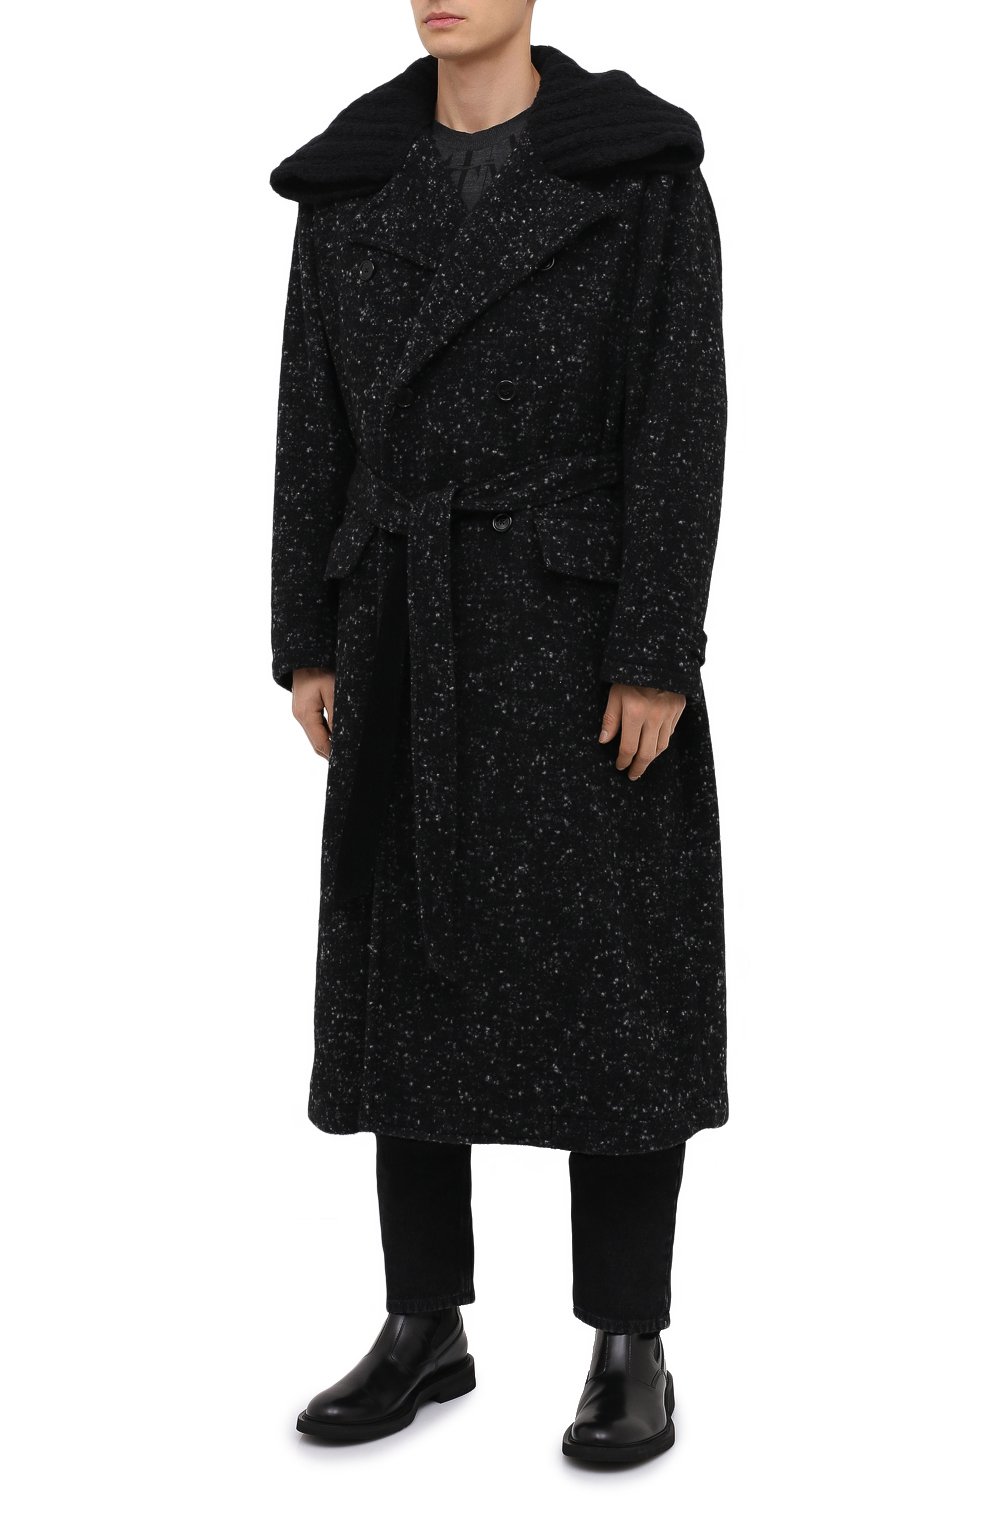 Мужской пальто из шерсти и хлопка DOLCE & GABBANA серого цвета, арт. G024TT/FMMF3 | Фото 3 (Материал внешний: Шерсть; Рукава: Длинные; Мужское Кросс-КТ: Верхняя одеж�да, пальто-верхняя одежда; Длина (верхняя одежда): Длинные; Стили: Кэжуэл)